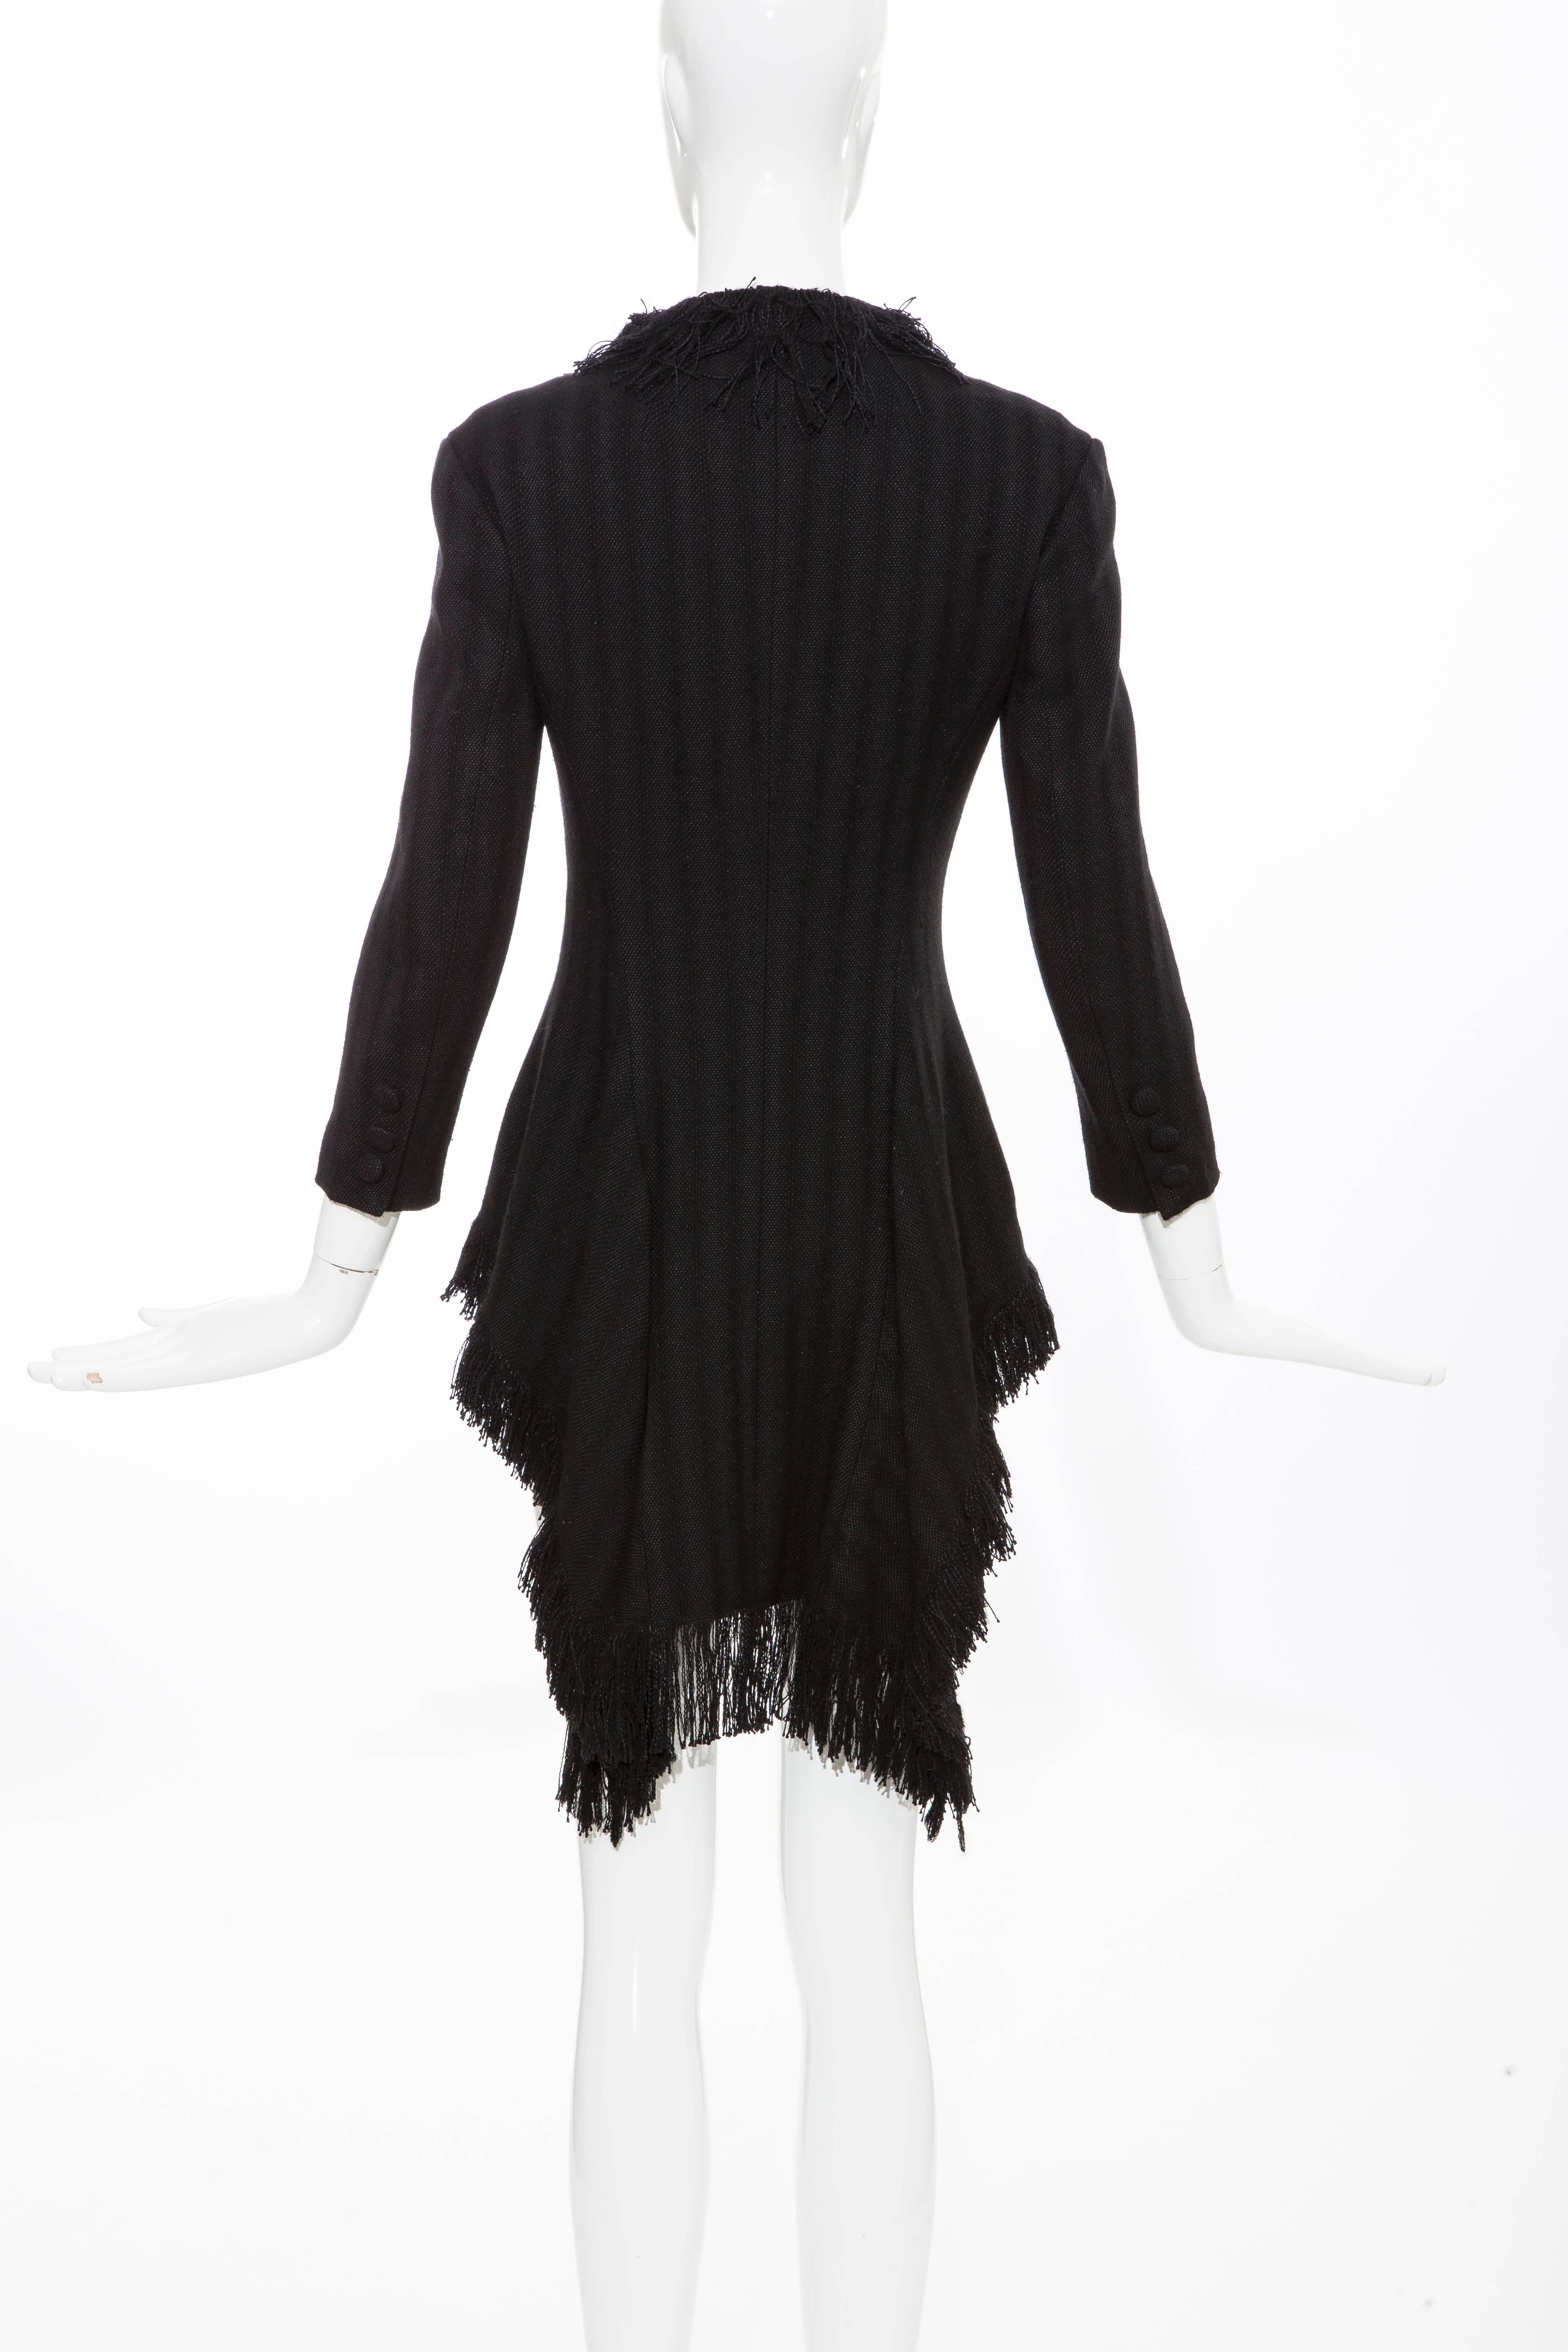 Yohji Yamamoto Black Silk Wool Tweed Cutaway Jacket With Fringe Trim, Fall 2013 For Sale 2